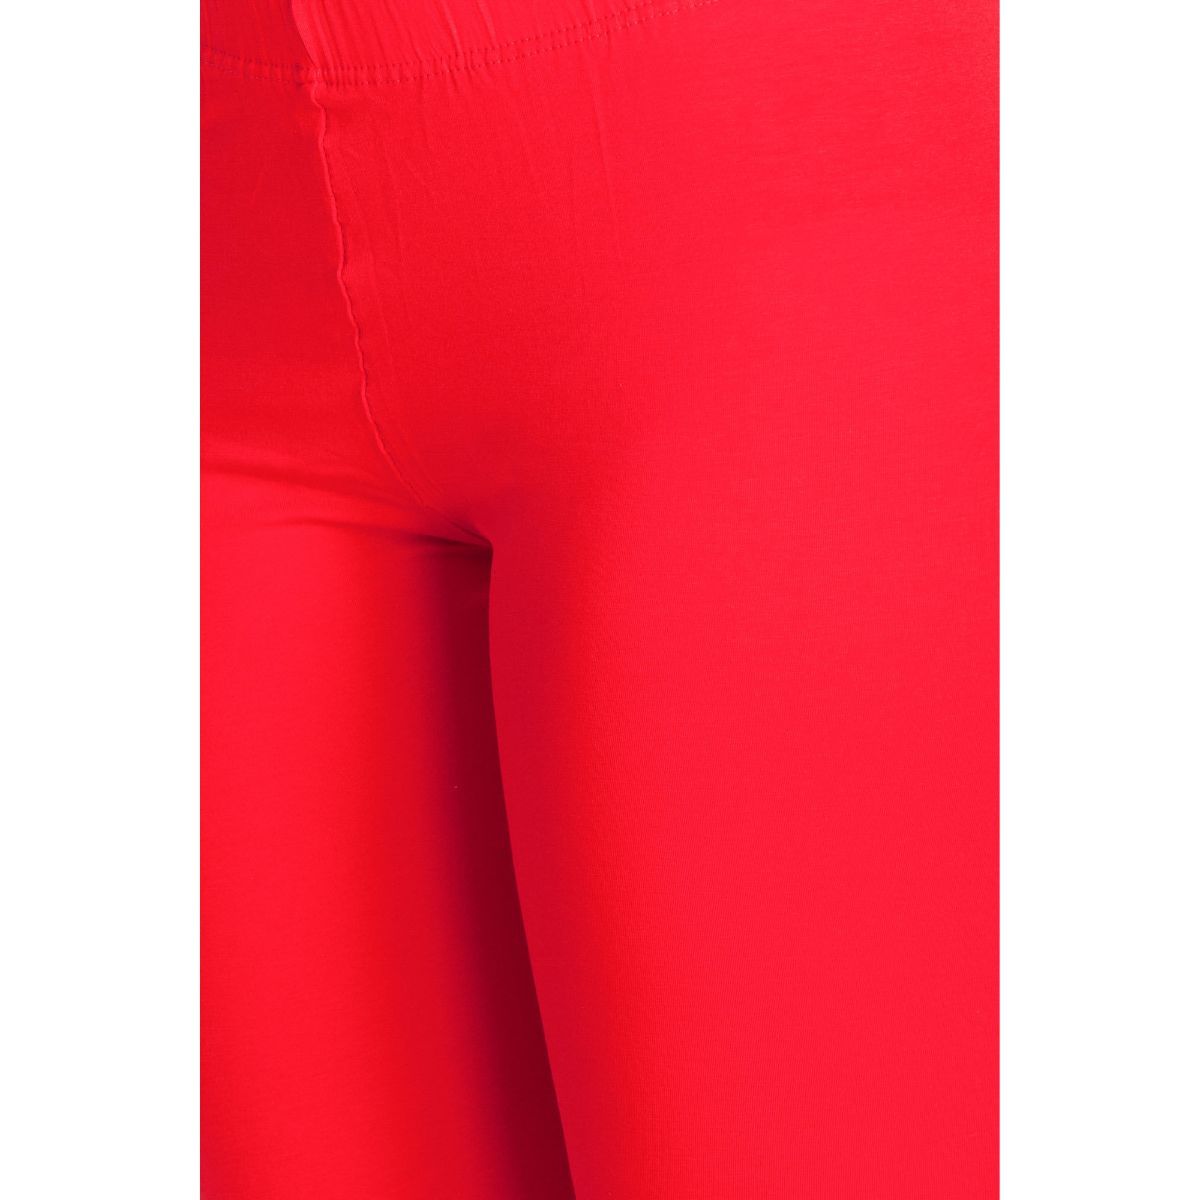 6% OFF on LUX LYRA Ethnic Wear Legging(Red, White, Solid) on Flipkart |  PaisaWapas.com